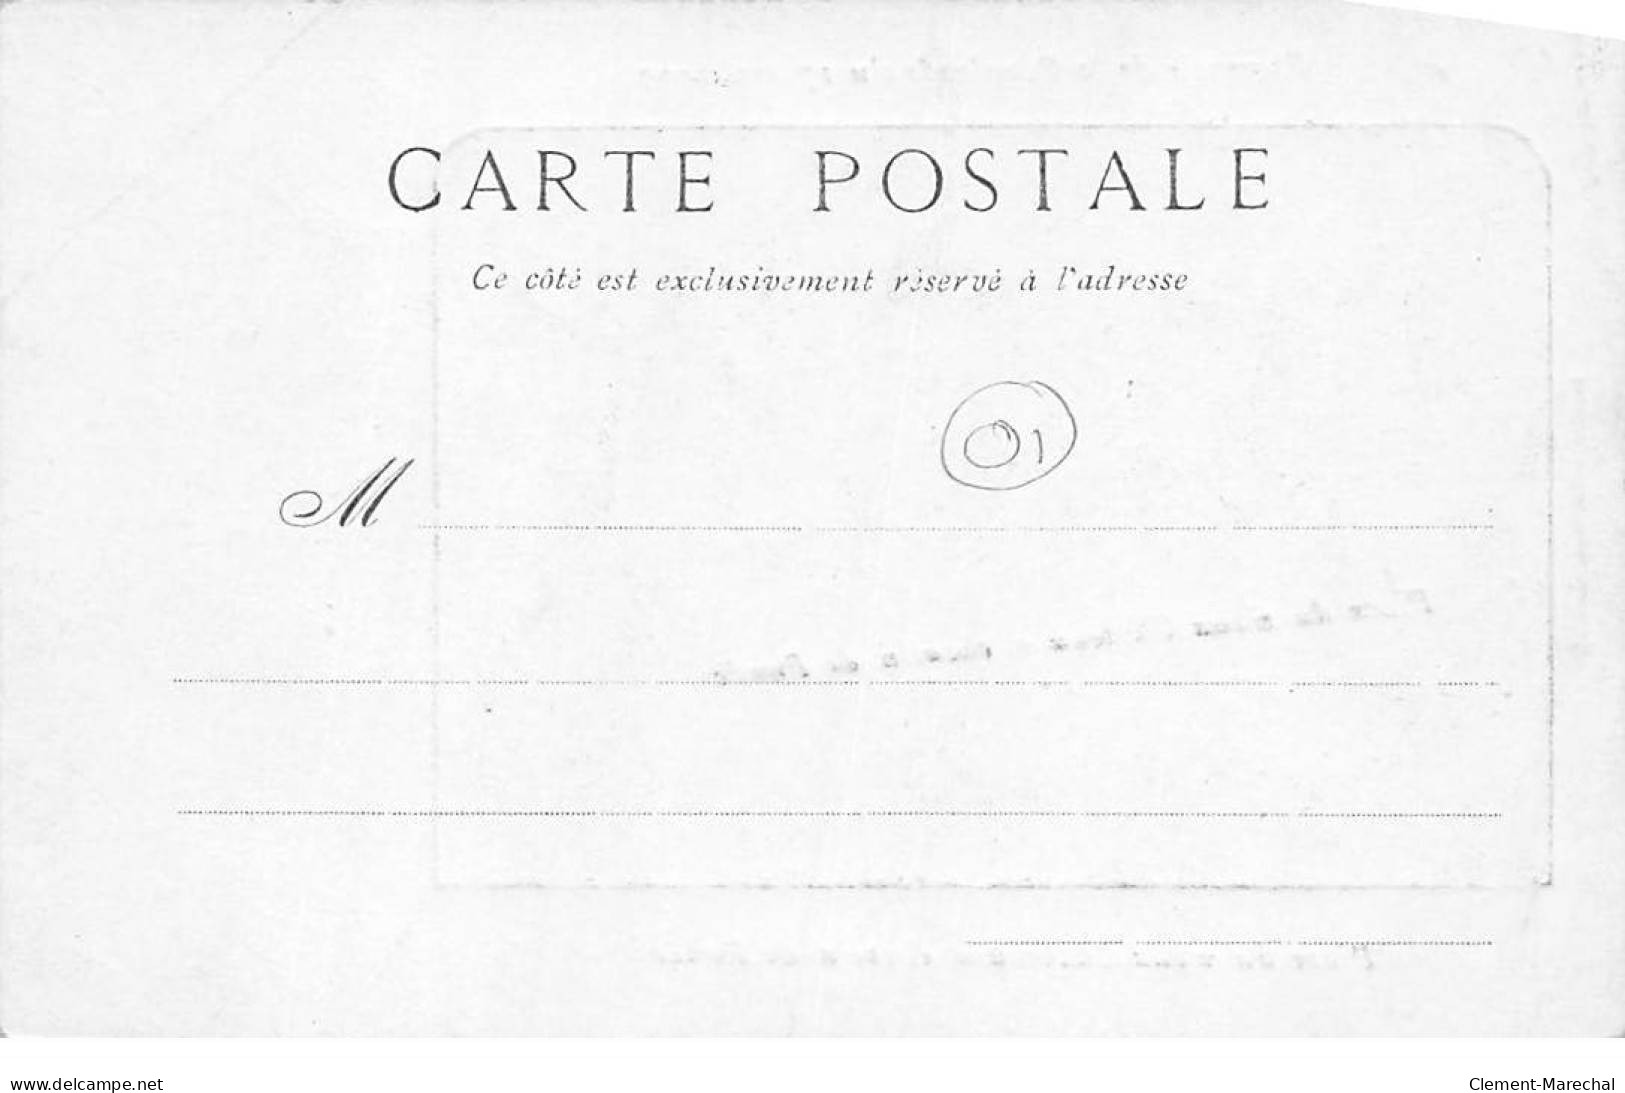 Souvenir De La Cavalcade Du 17 Mai 1903 - Place Du Vieux Château Et Chemin De Ronde - Très Bon état - Unclassified